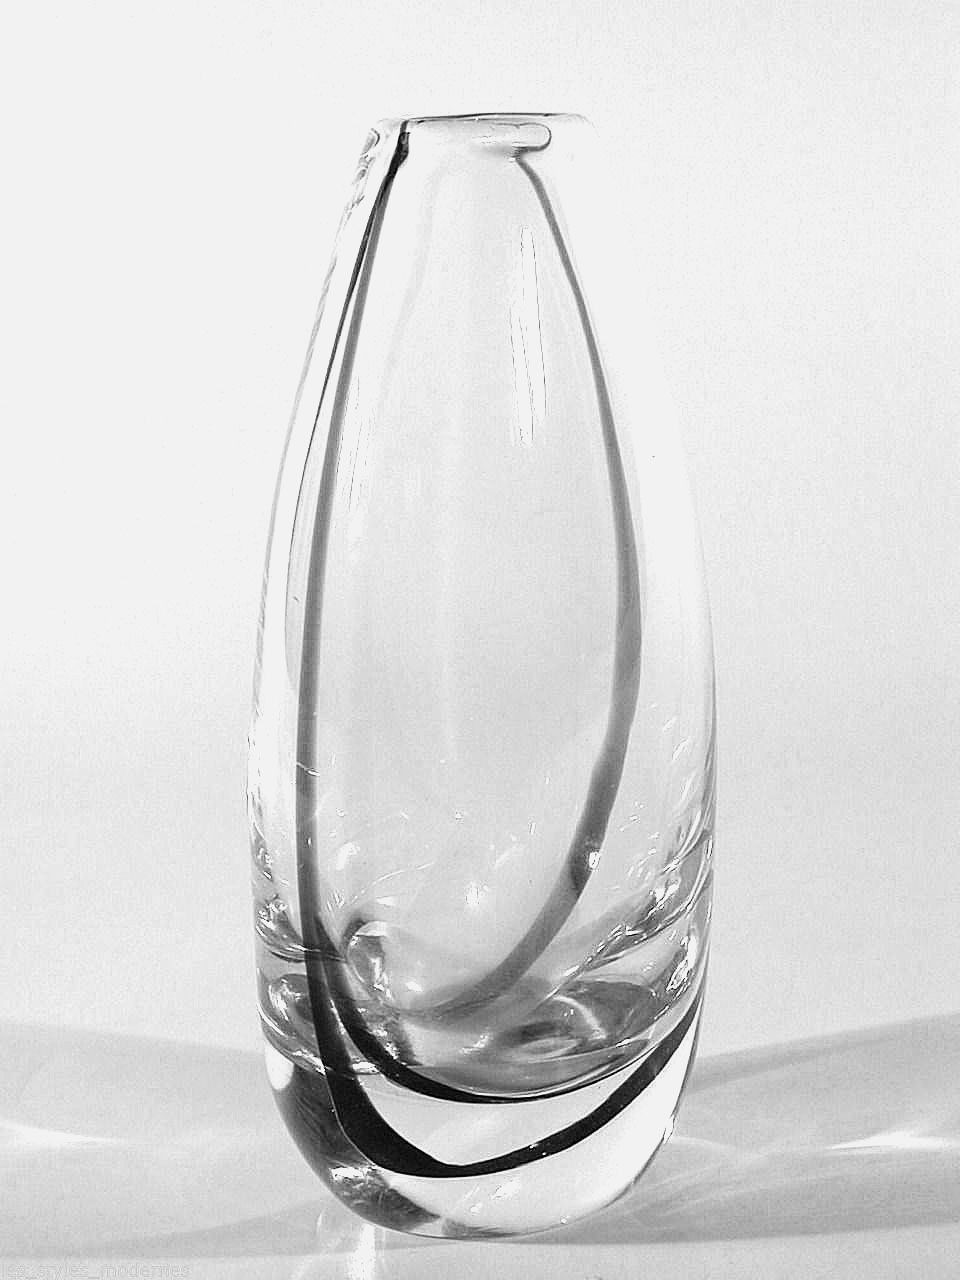 kosta boda glass vase of kosta glas vase a design vicke lindstrand a signiert a sweden art throughout 1 von 1 siehe mehr